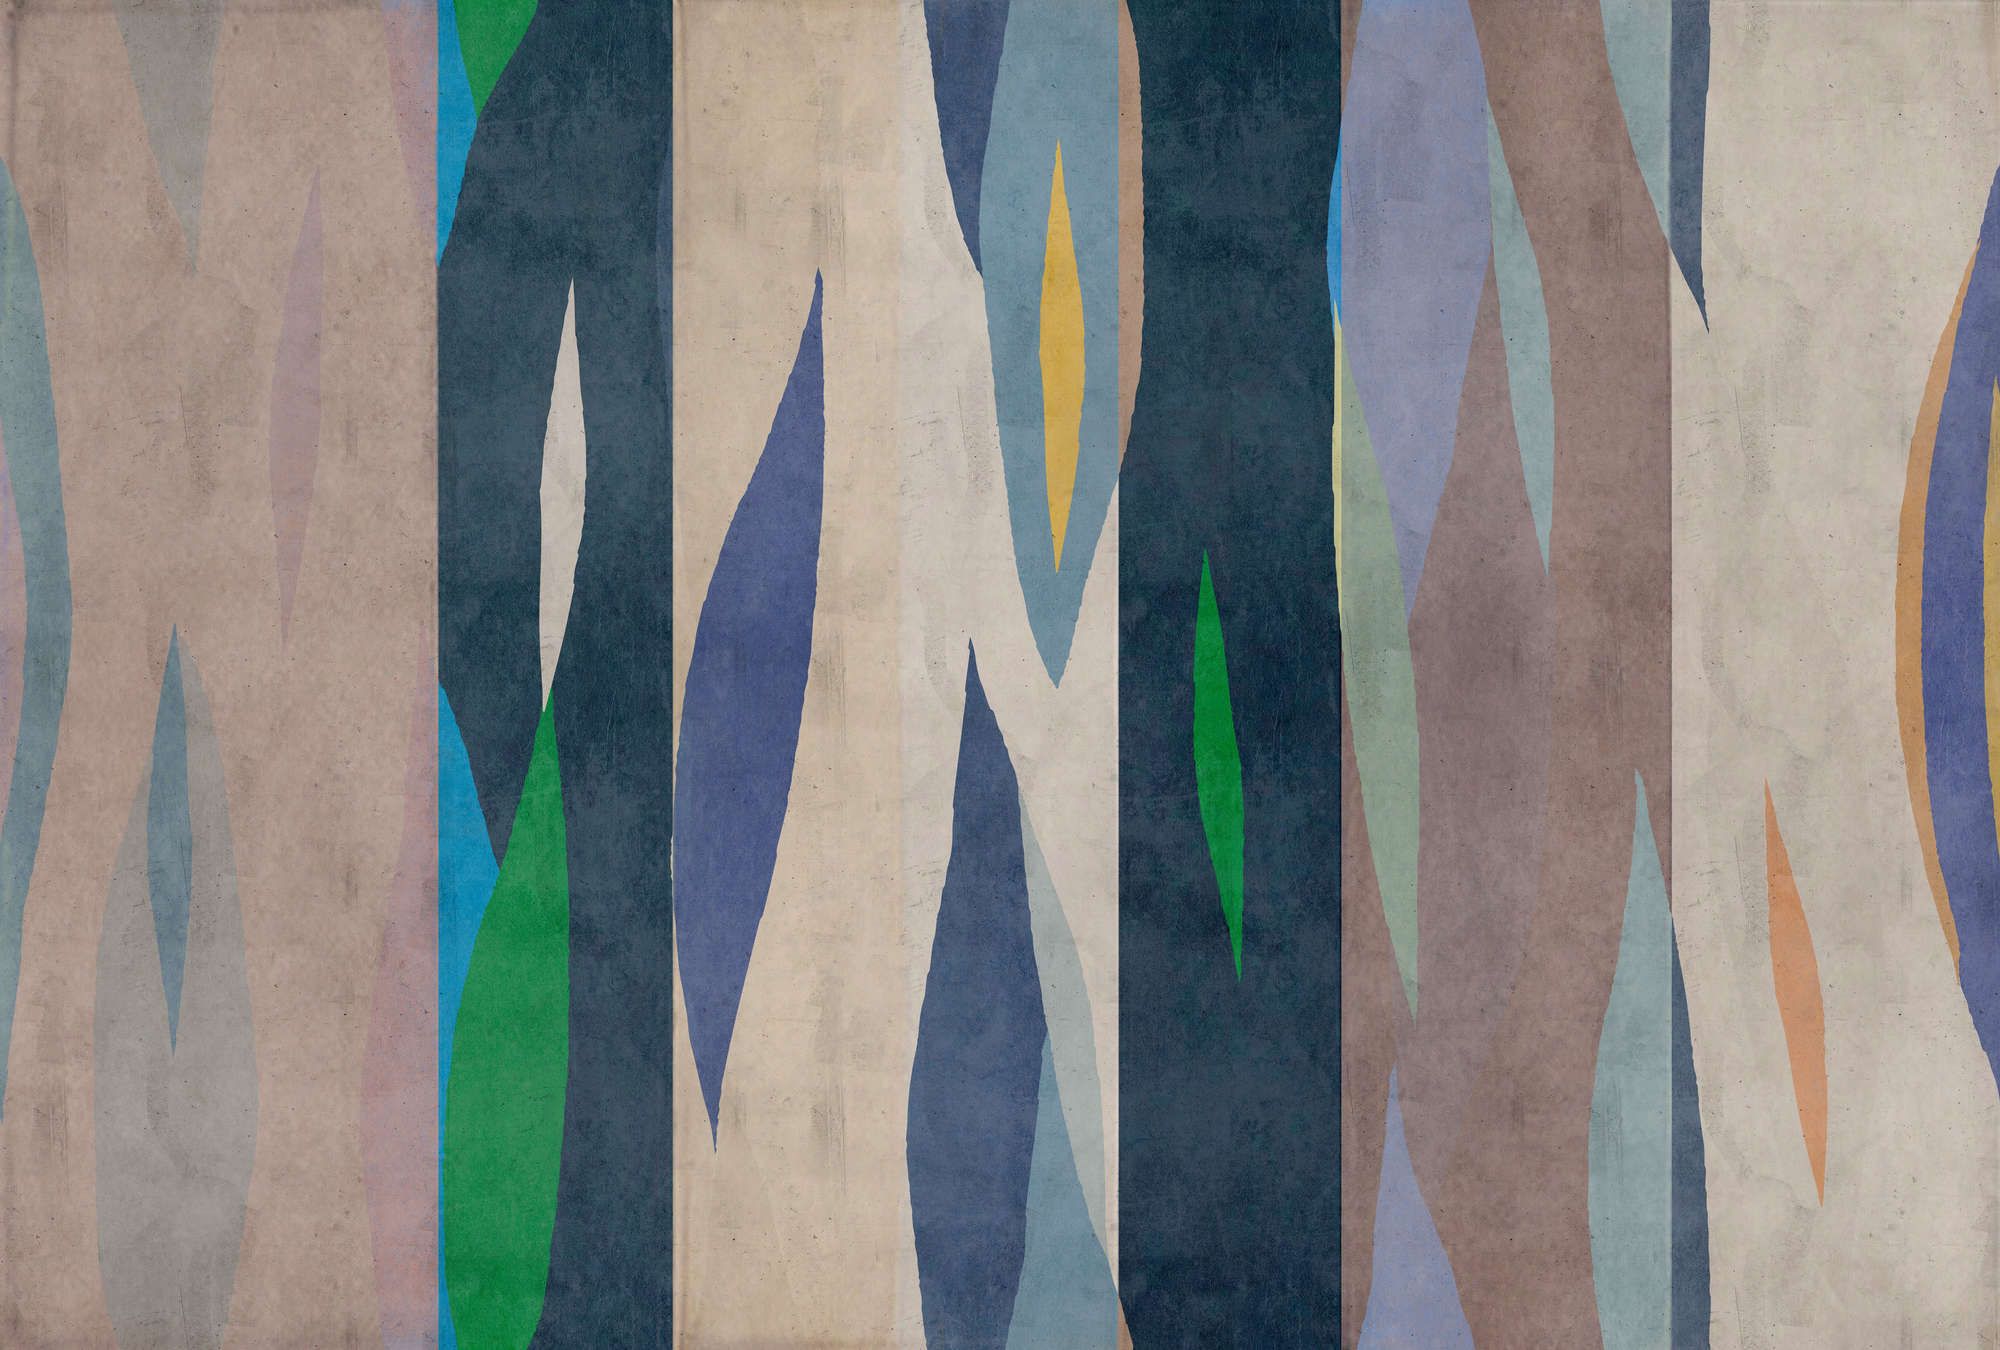             Fotomurali »vito« - Disegno di tigri colorate su intonaco di cemento - Blu, verde | Materiali non tessuto liscio e leggermente perlato
        